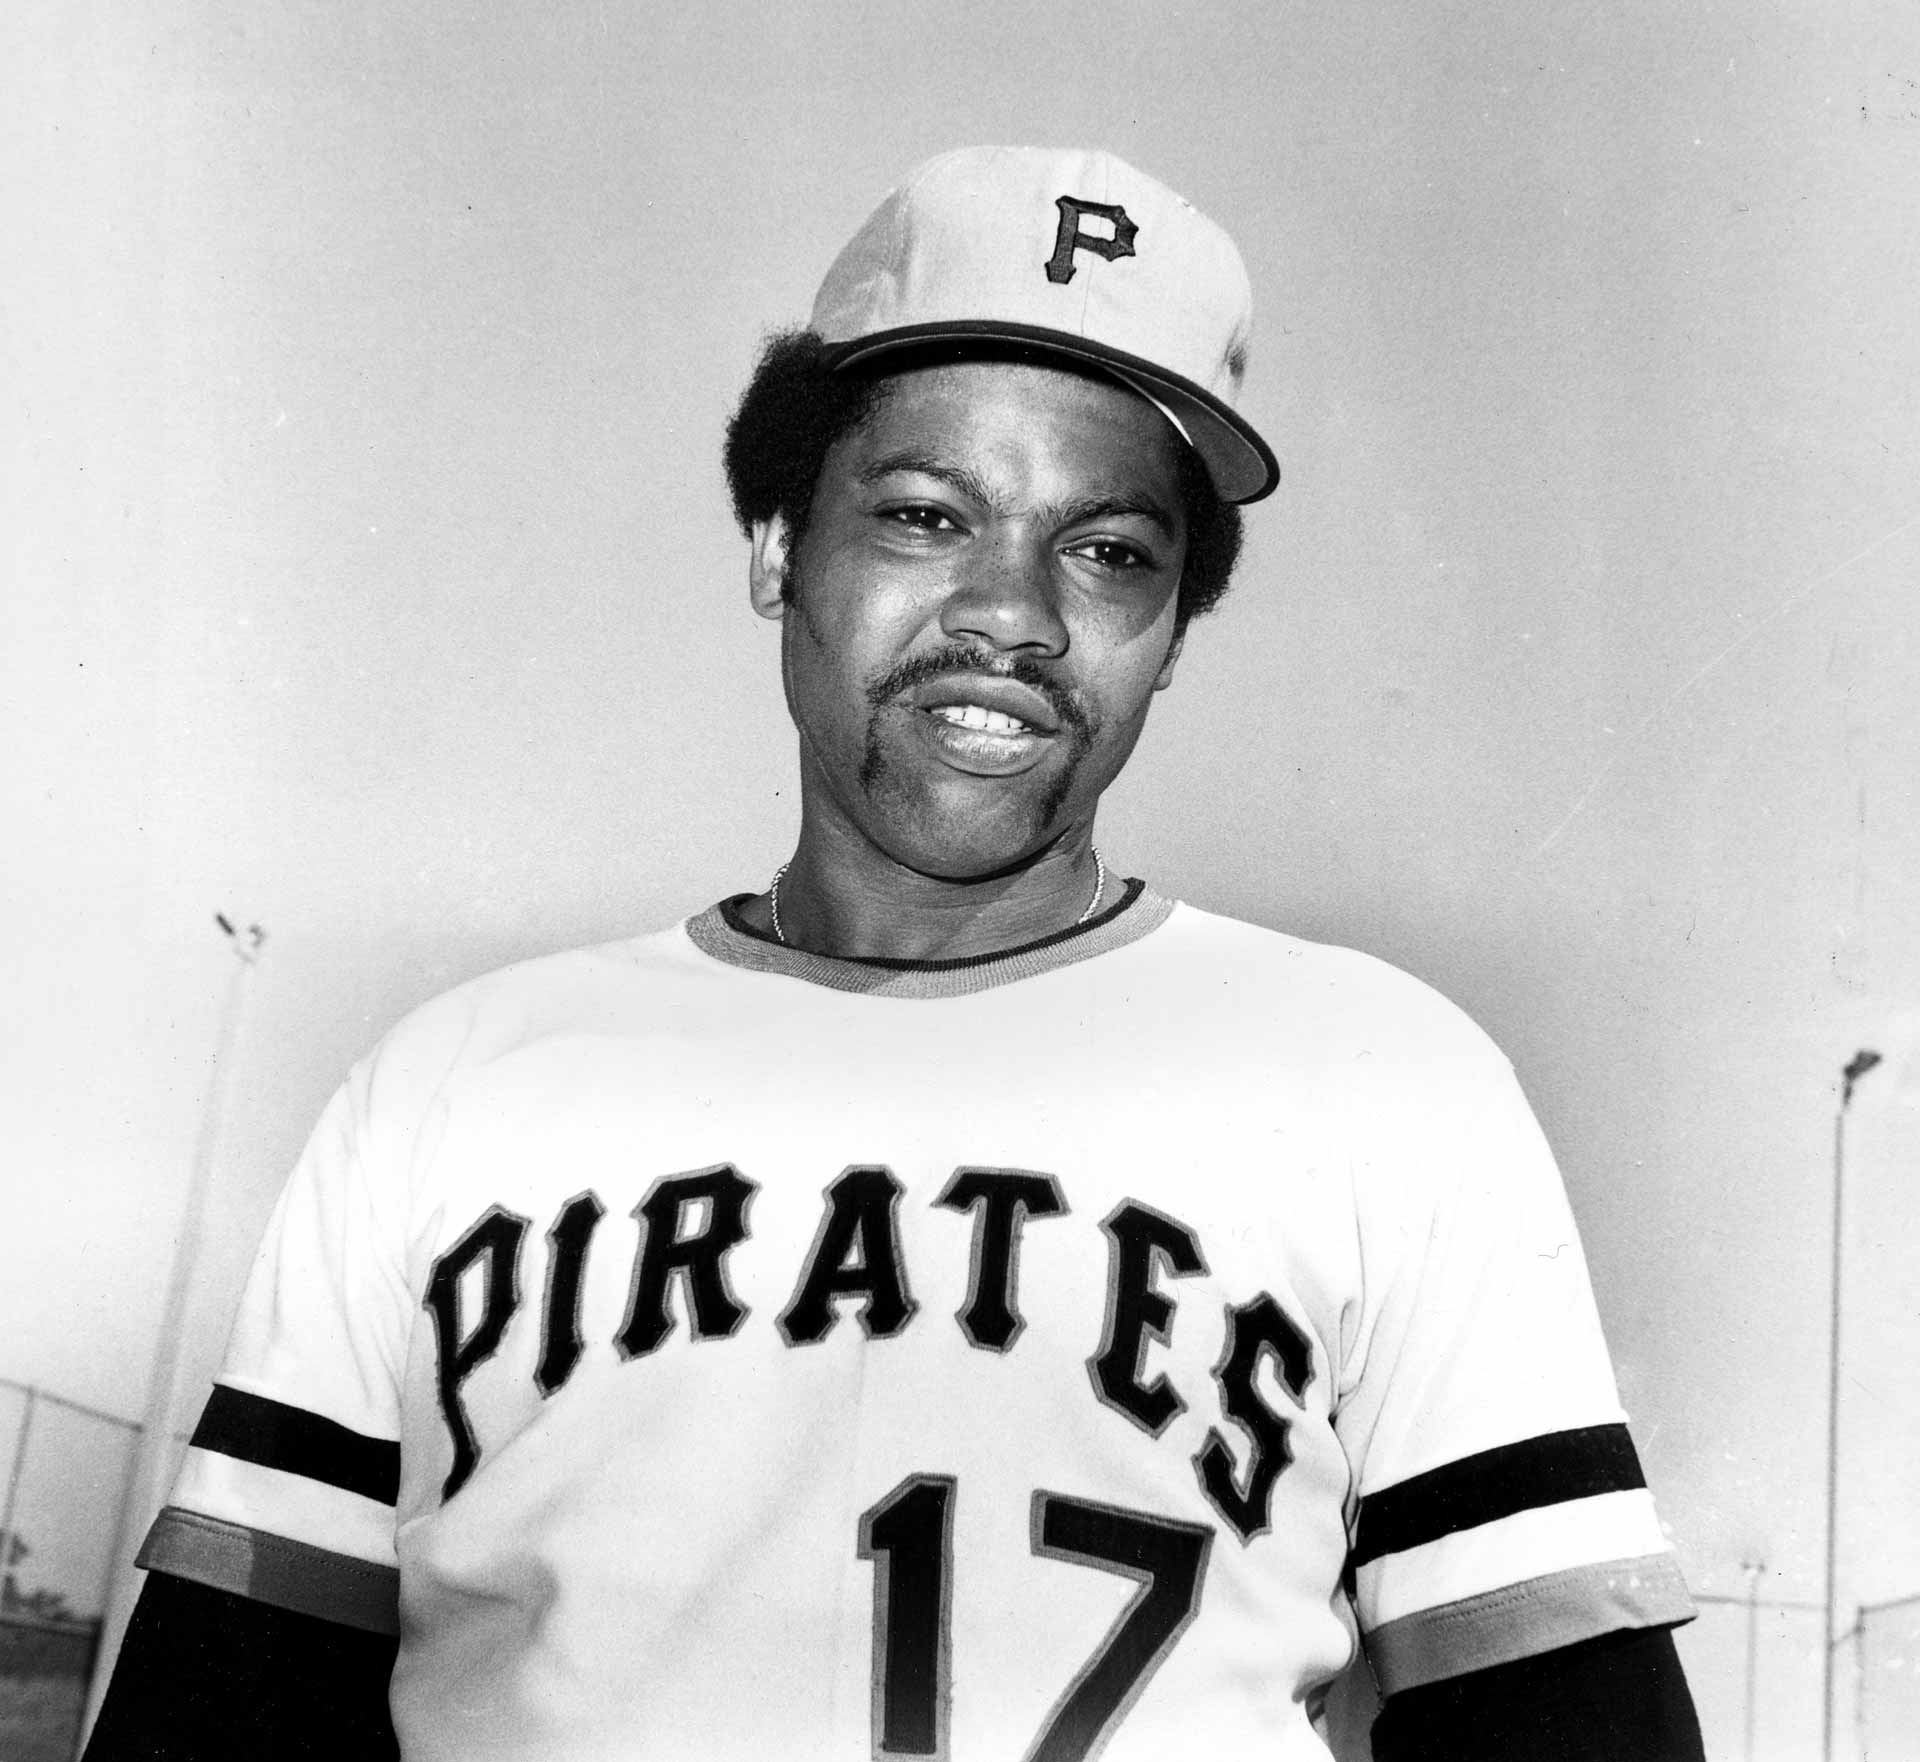 Dock Ellis Jersey - 1970's Pittsburgh Pirates Baseball Throwback